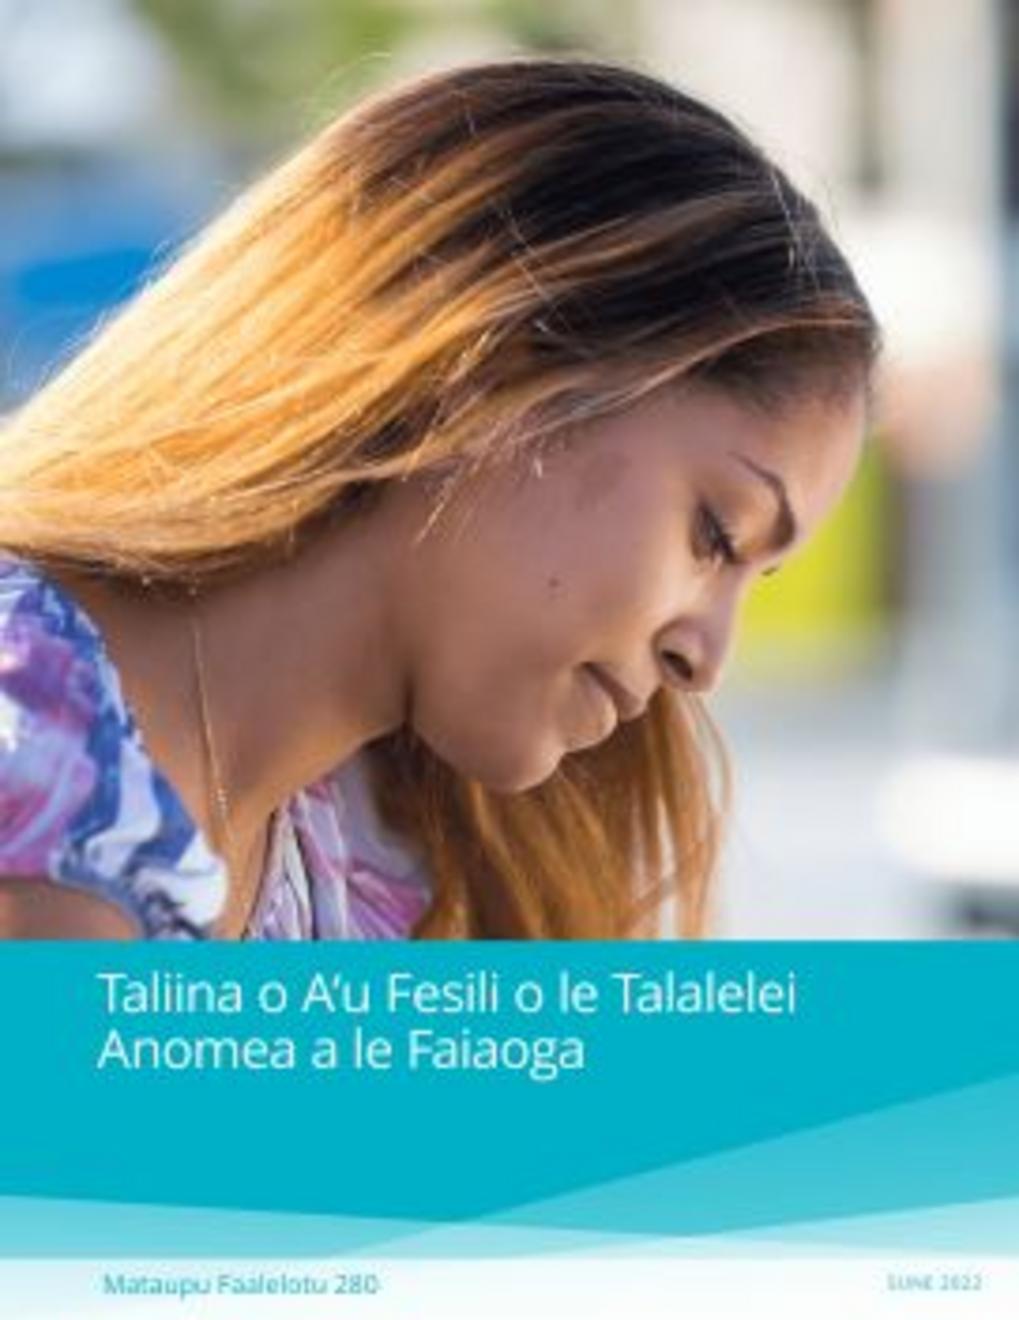 Taliina o A‘u Fesili o le Talalelei Anomea a le Faiaoga (Mataupu Faalelotu 280)